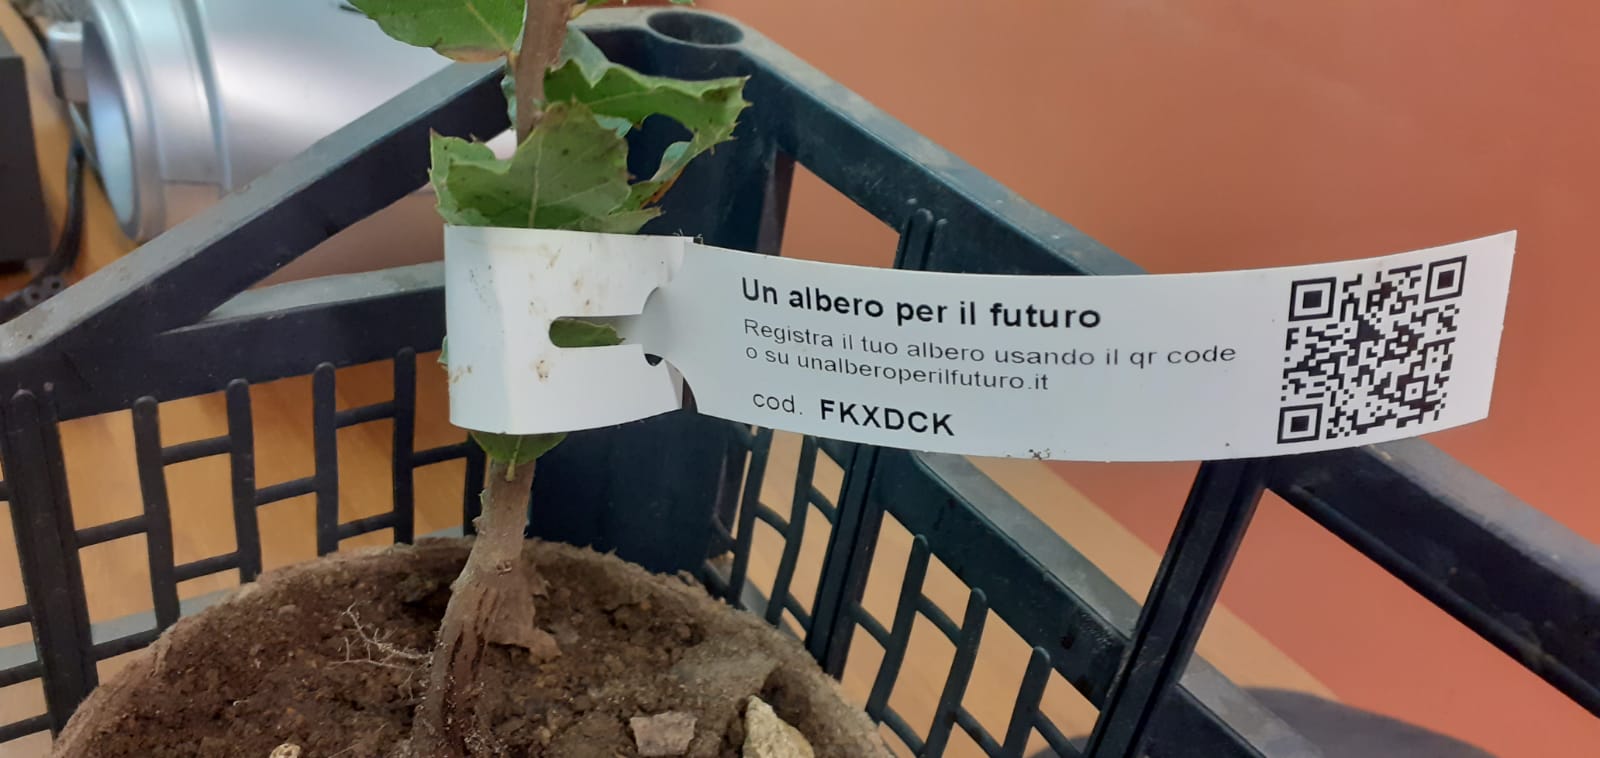 Legalità e attenzione all’ambiente: gli studenti di Alassio impegnati nel progetto “Un albero per il futuro”